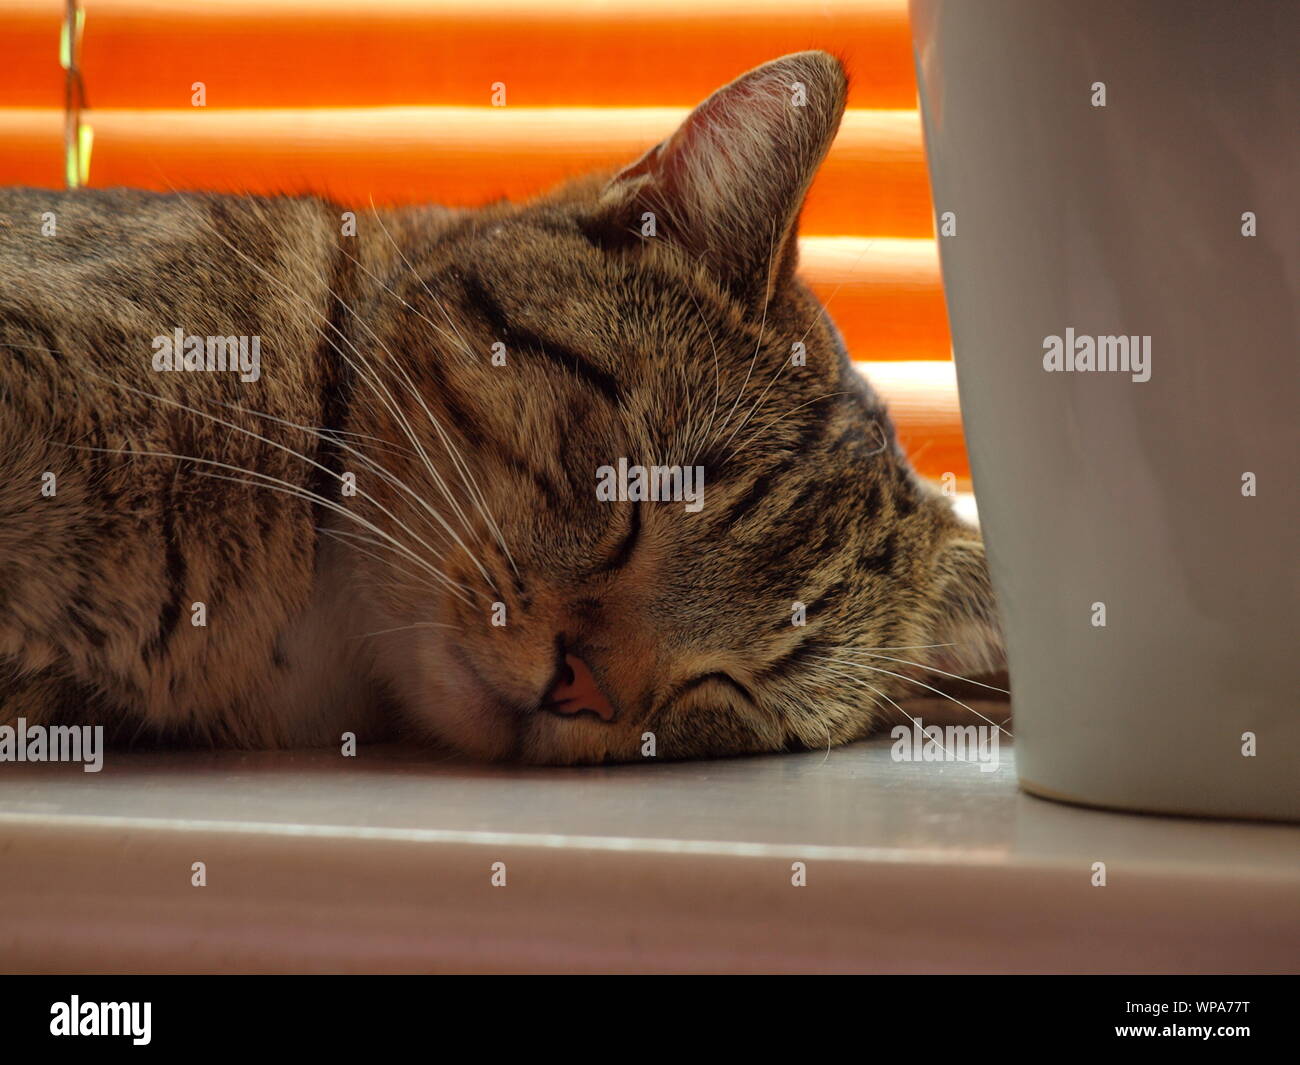 Männliche/tomcat Ägyptischen Mau Schlaf-/Napping auf einer Fensterbank in ein Inlands-/home Einstellung Felis catus Stockfoto